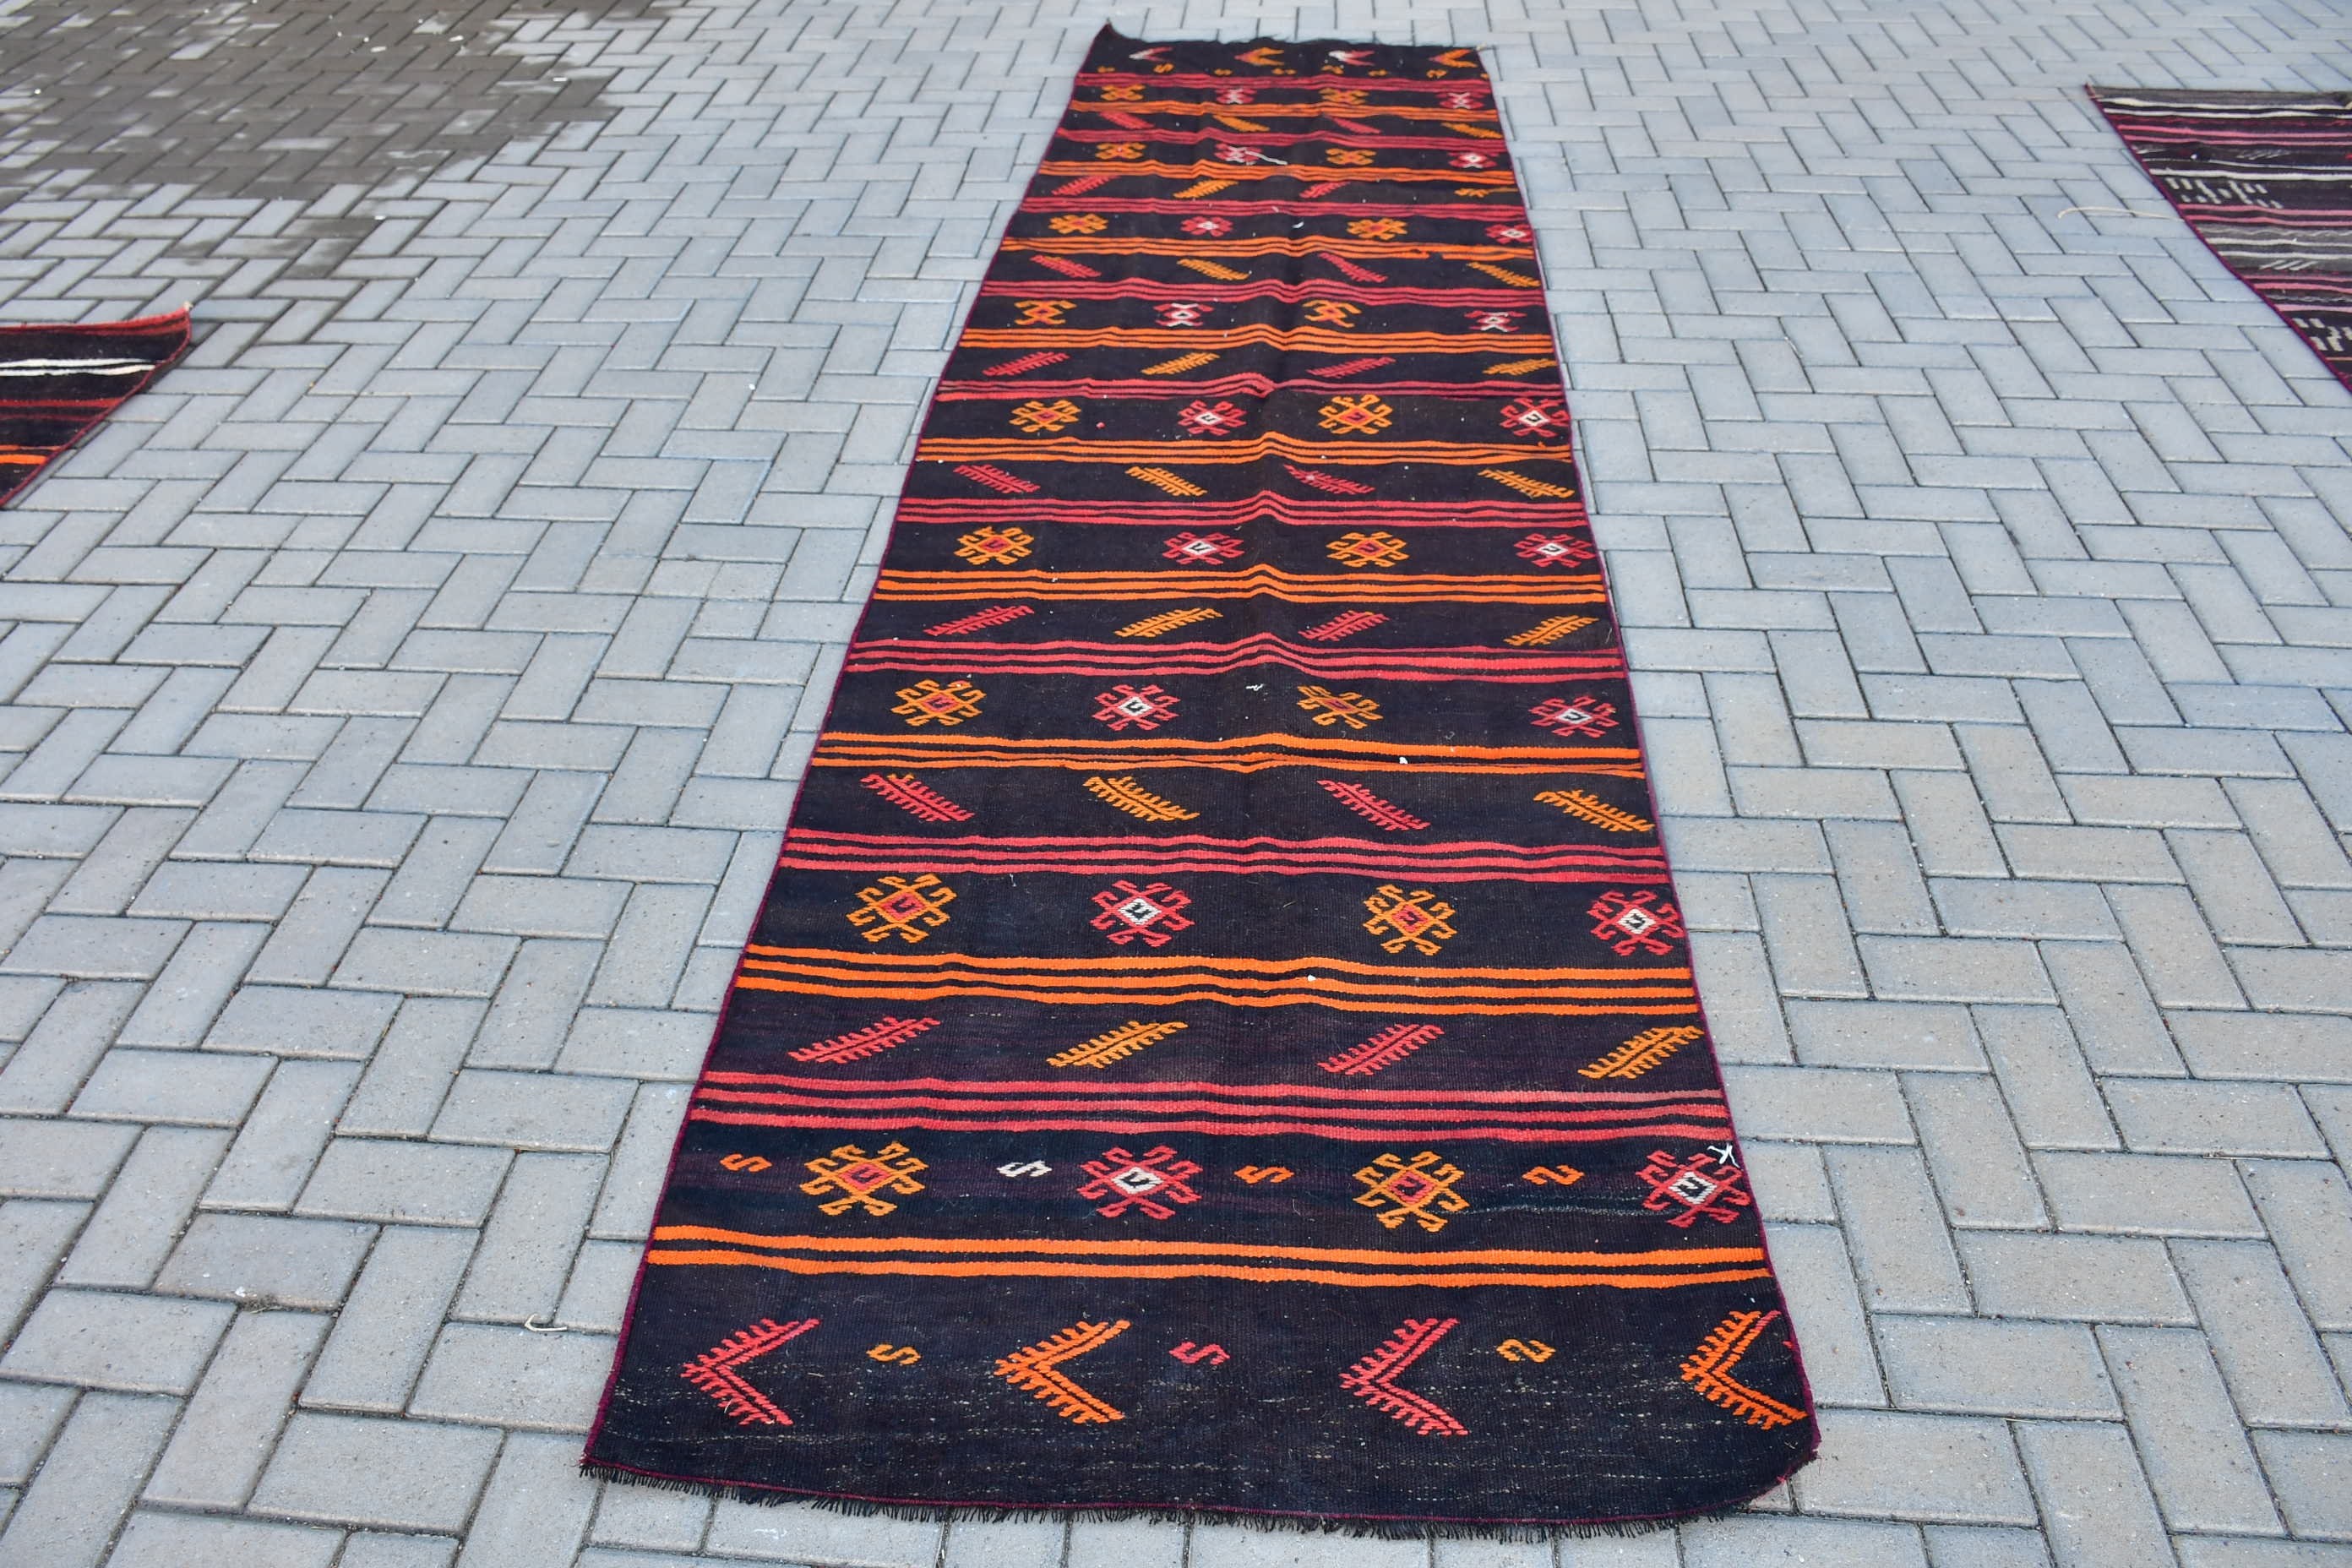 Corridor Rug, Vintage Rug, Rugs for Runner, Bedroom Rug, Anatolian Rugs, Turkish Rugs, Kilim, Black  3.5x13 ft Runner Rug